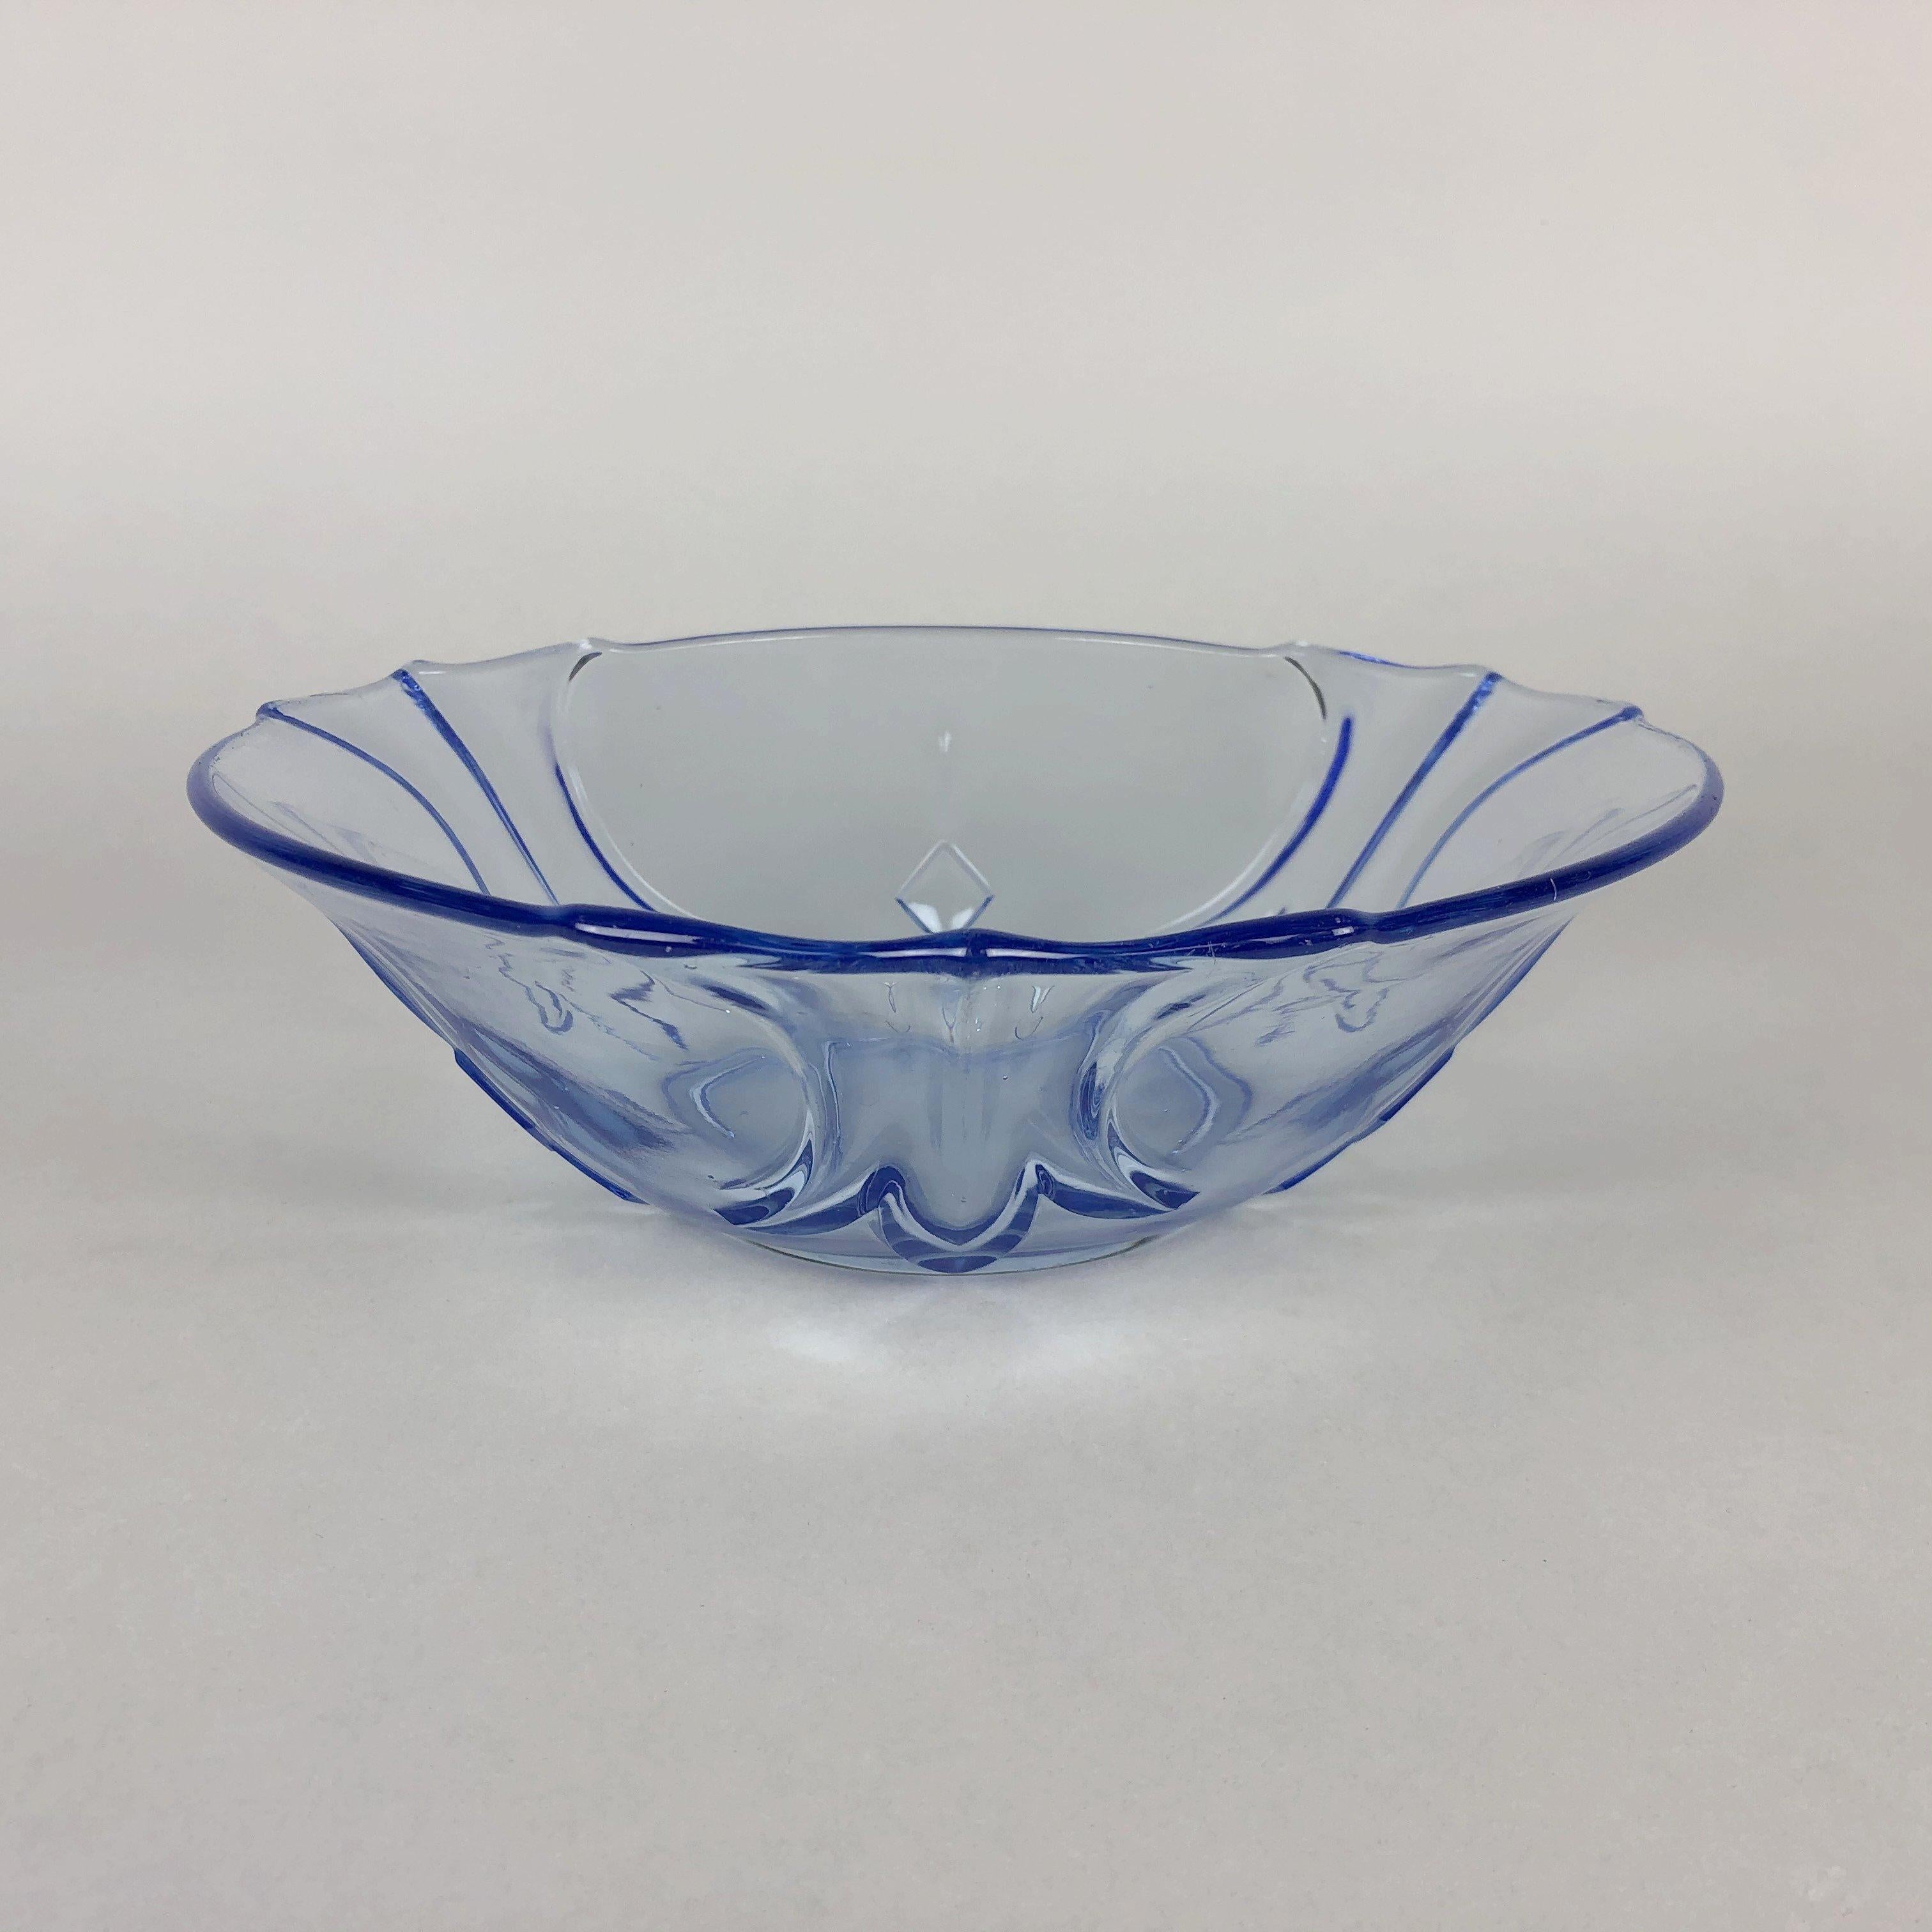 Joli bol en verre bleu transparent vintage. Le bol mesure environ 8 cm (3,15 pouces) et 24,5 cm (9,65 pouces) de large.